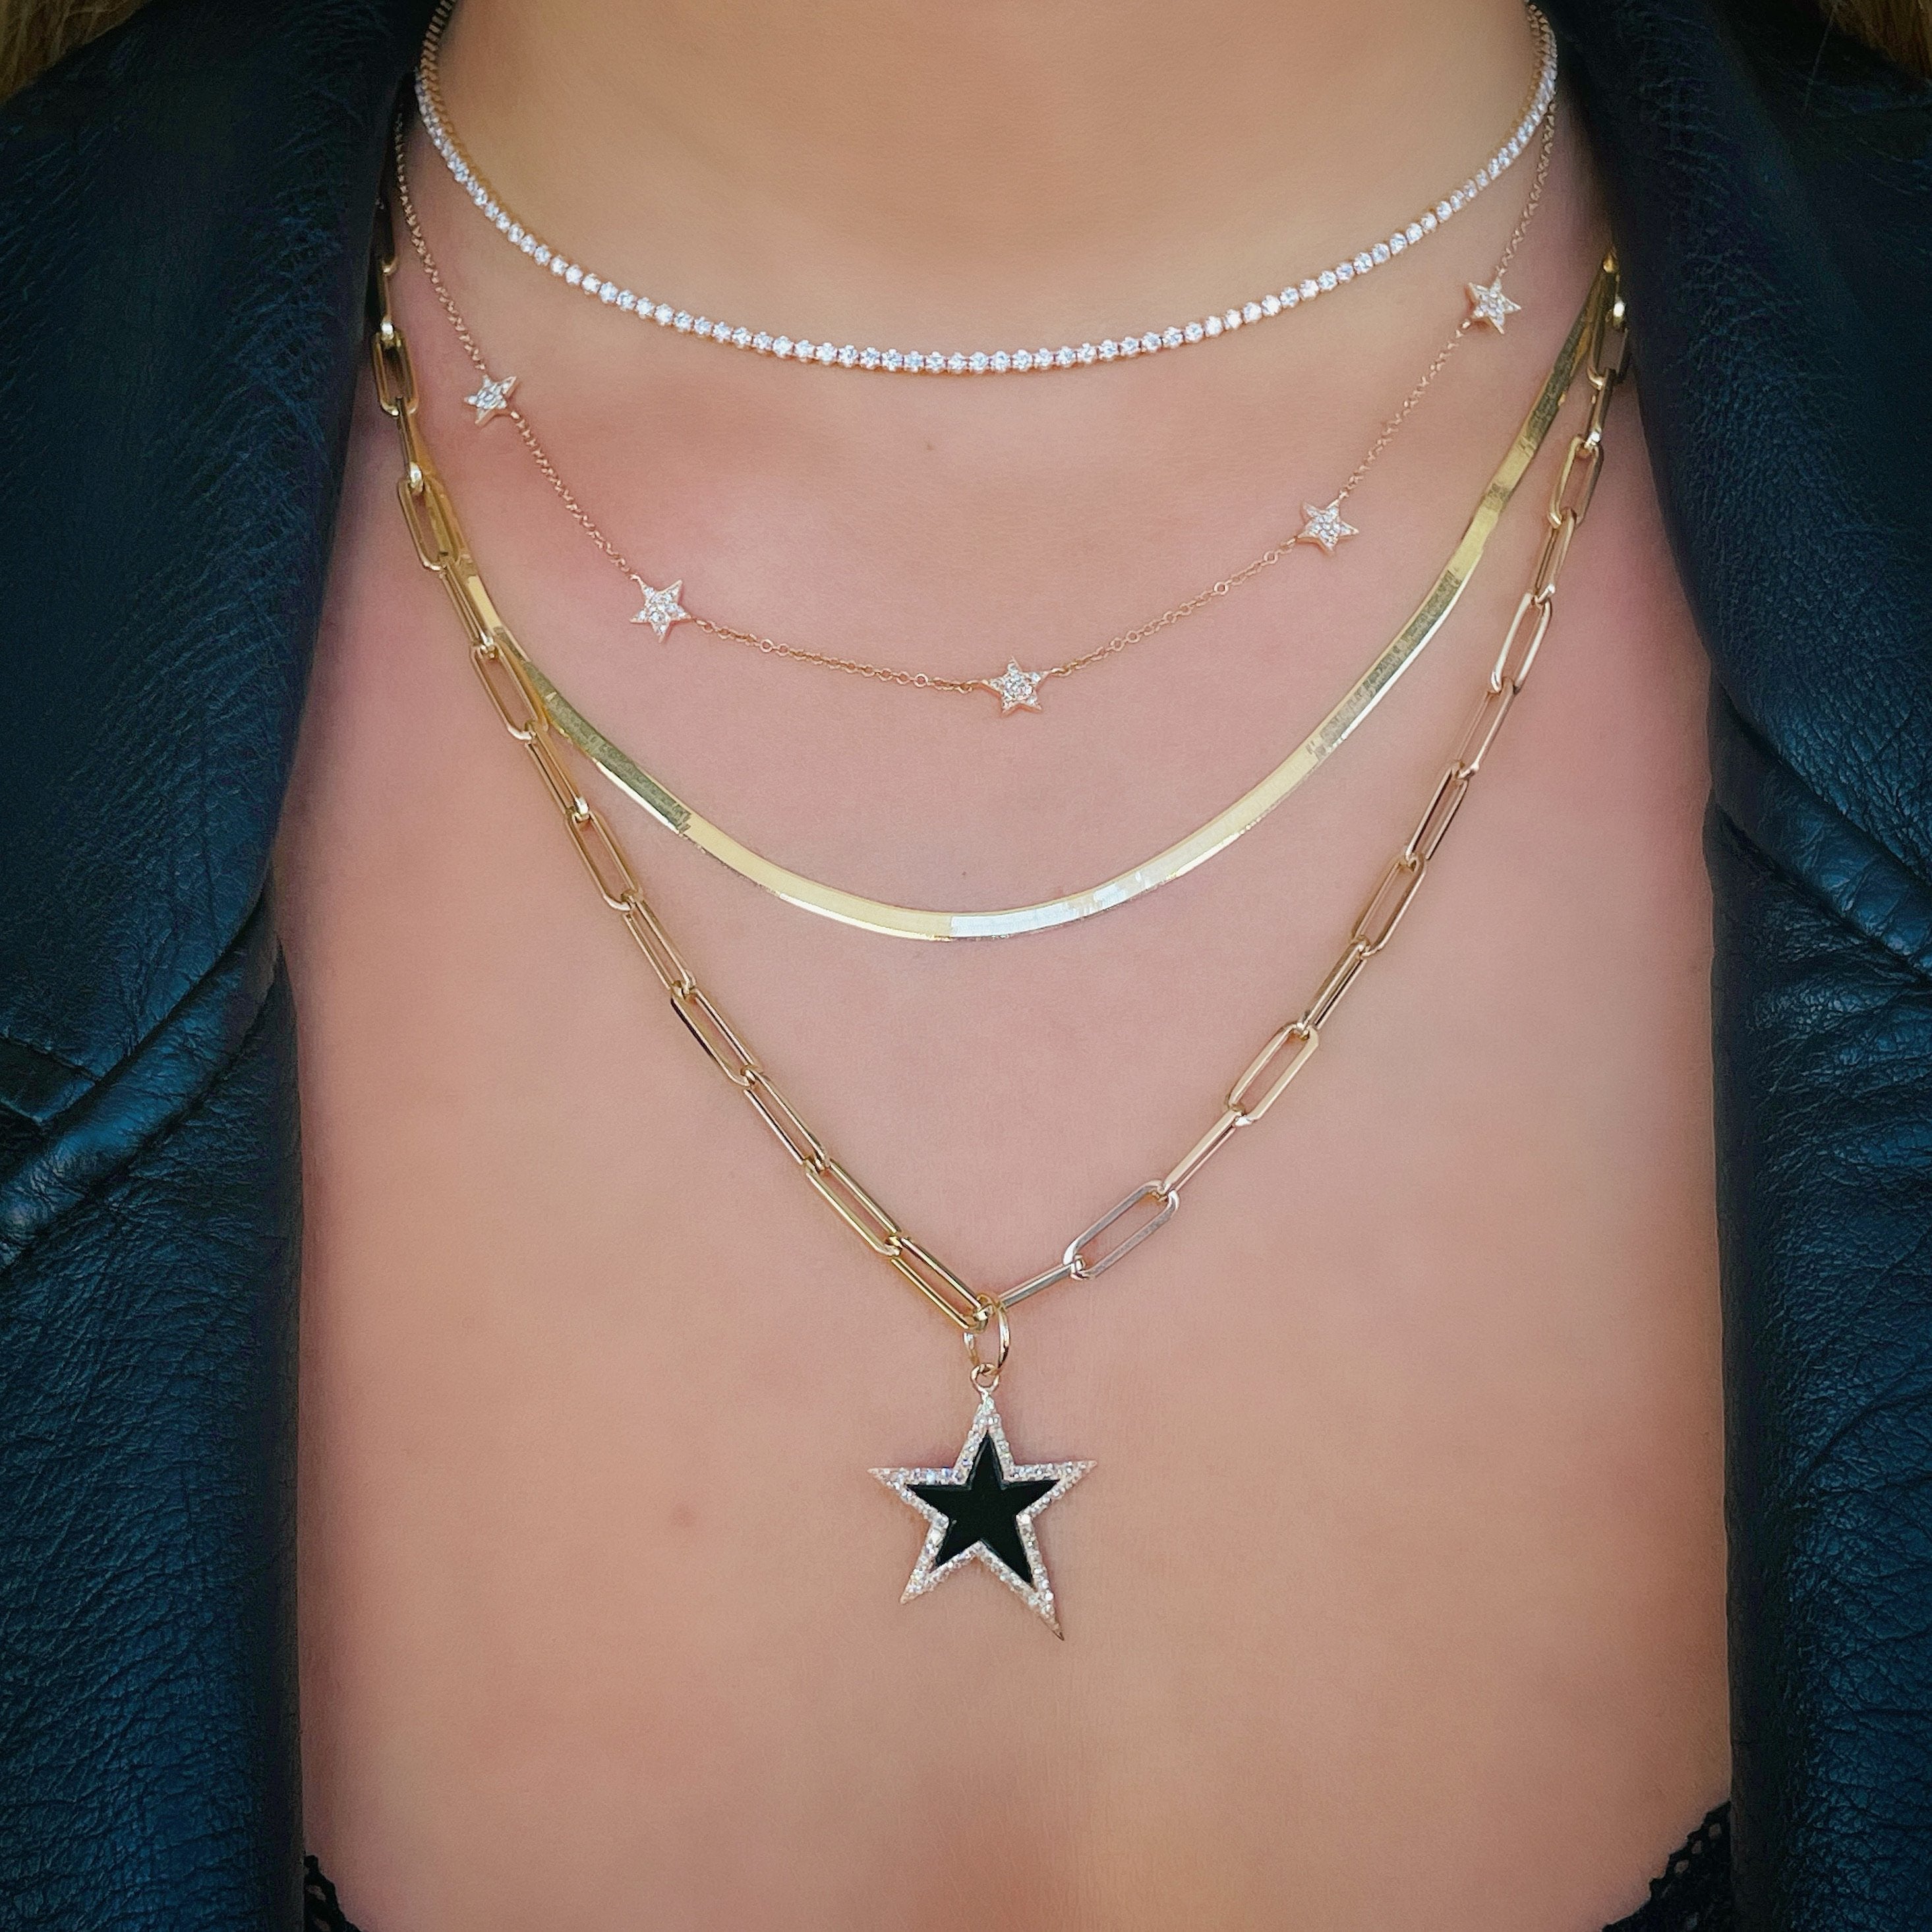 14K Gold Onyx Star Diamond Necklace Charm - Charms & Pendants - Izakov Diamonds + Fine Jewelry